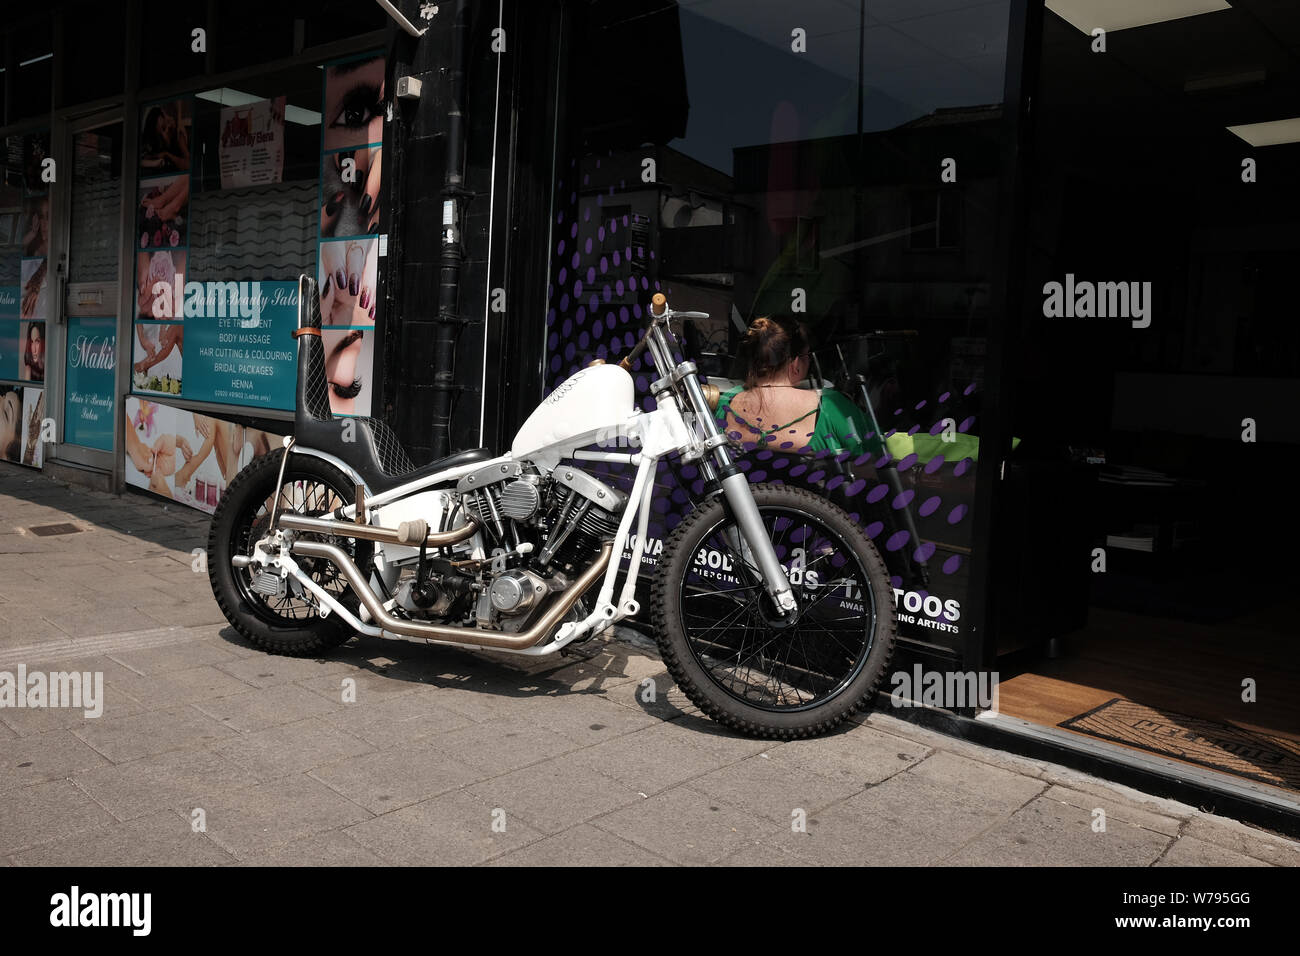 Juli 2019 - Weiß Harley Davidson Chopper Motorrad außerhalb ein Shop in Cardiff, Wales, UK. Stockfoto